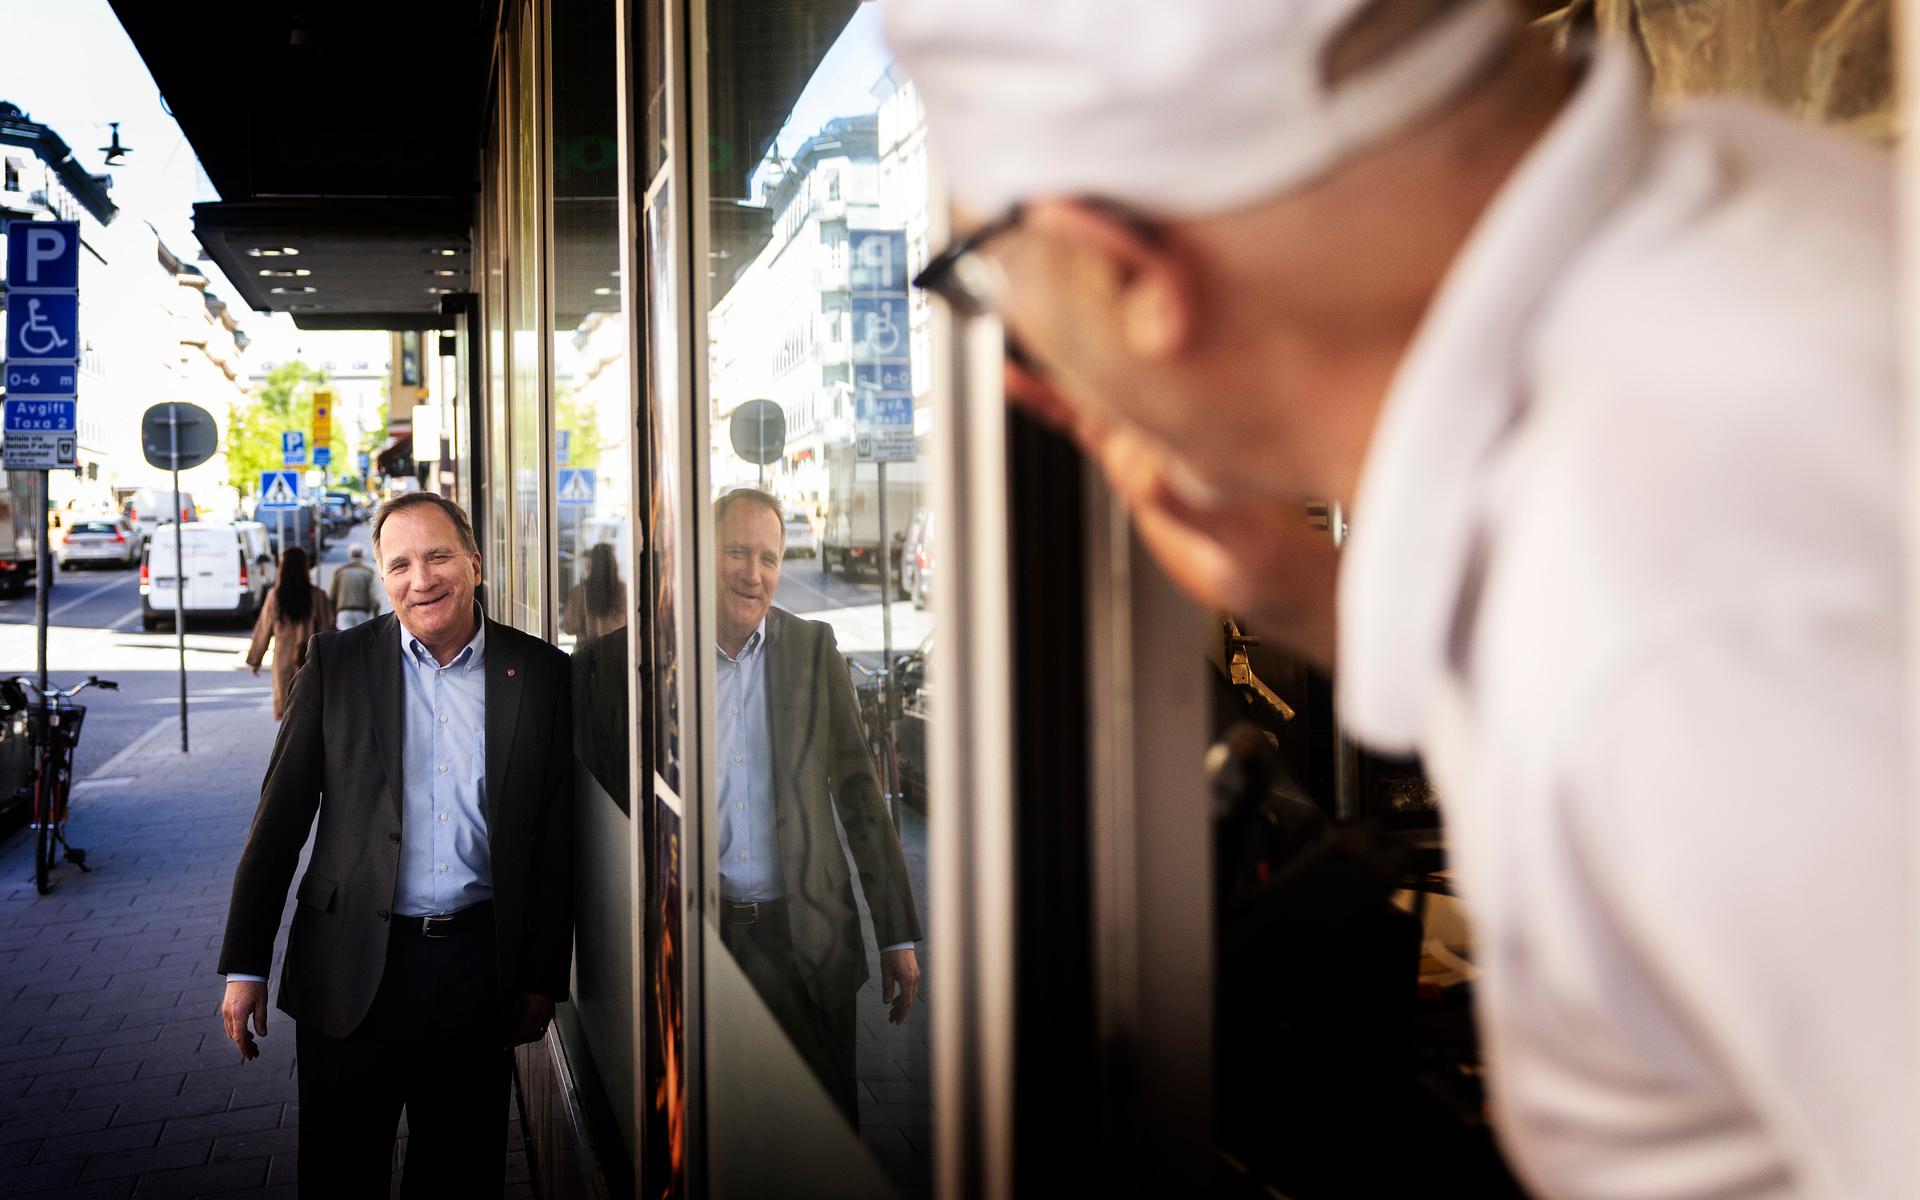 ”Är du tillbaka på jobbet?” frågar bagaren när han ser före detta statsminister Stefan Löfven (S) i centrala Stockholm. Löfven byter nu fot i Natofrågan.